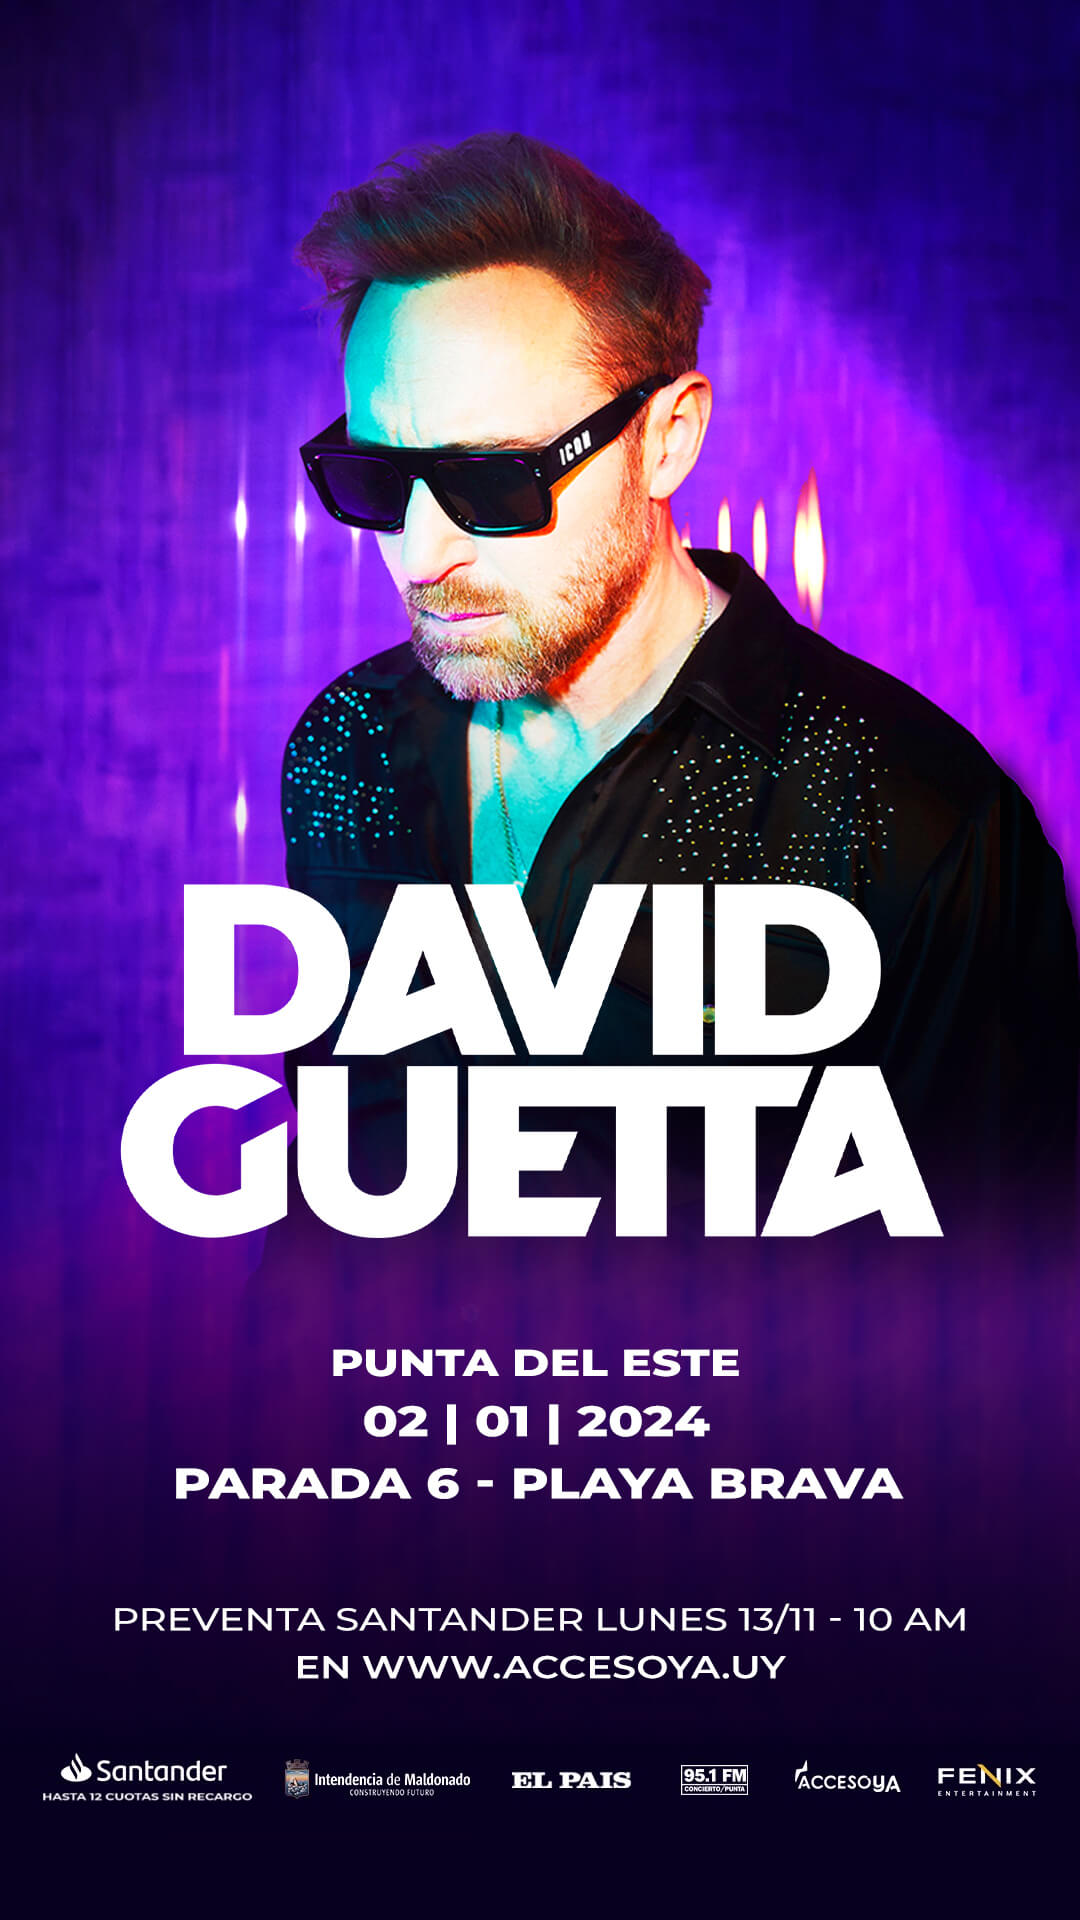 David Guetta regresa a Punta del Este en 2024